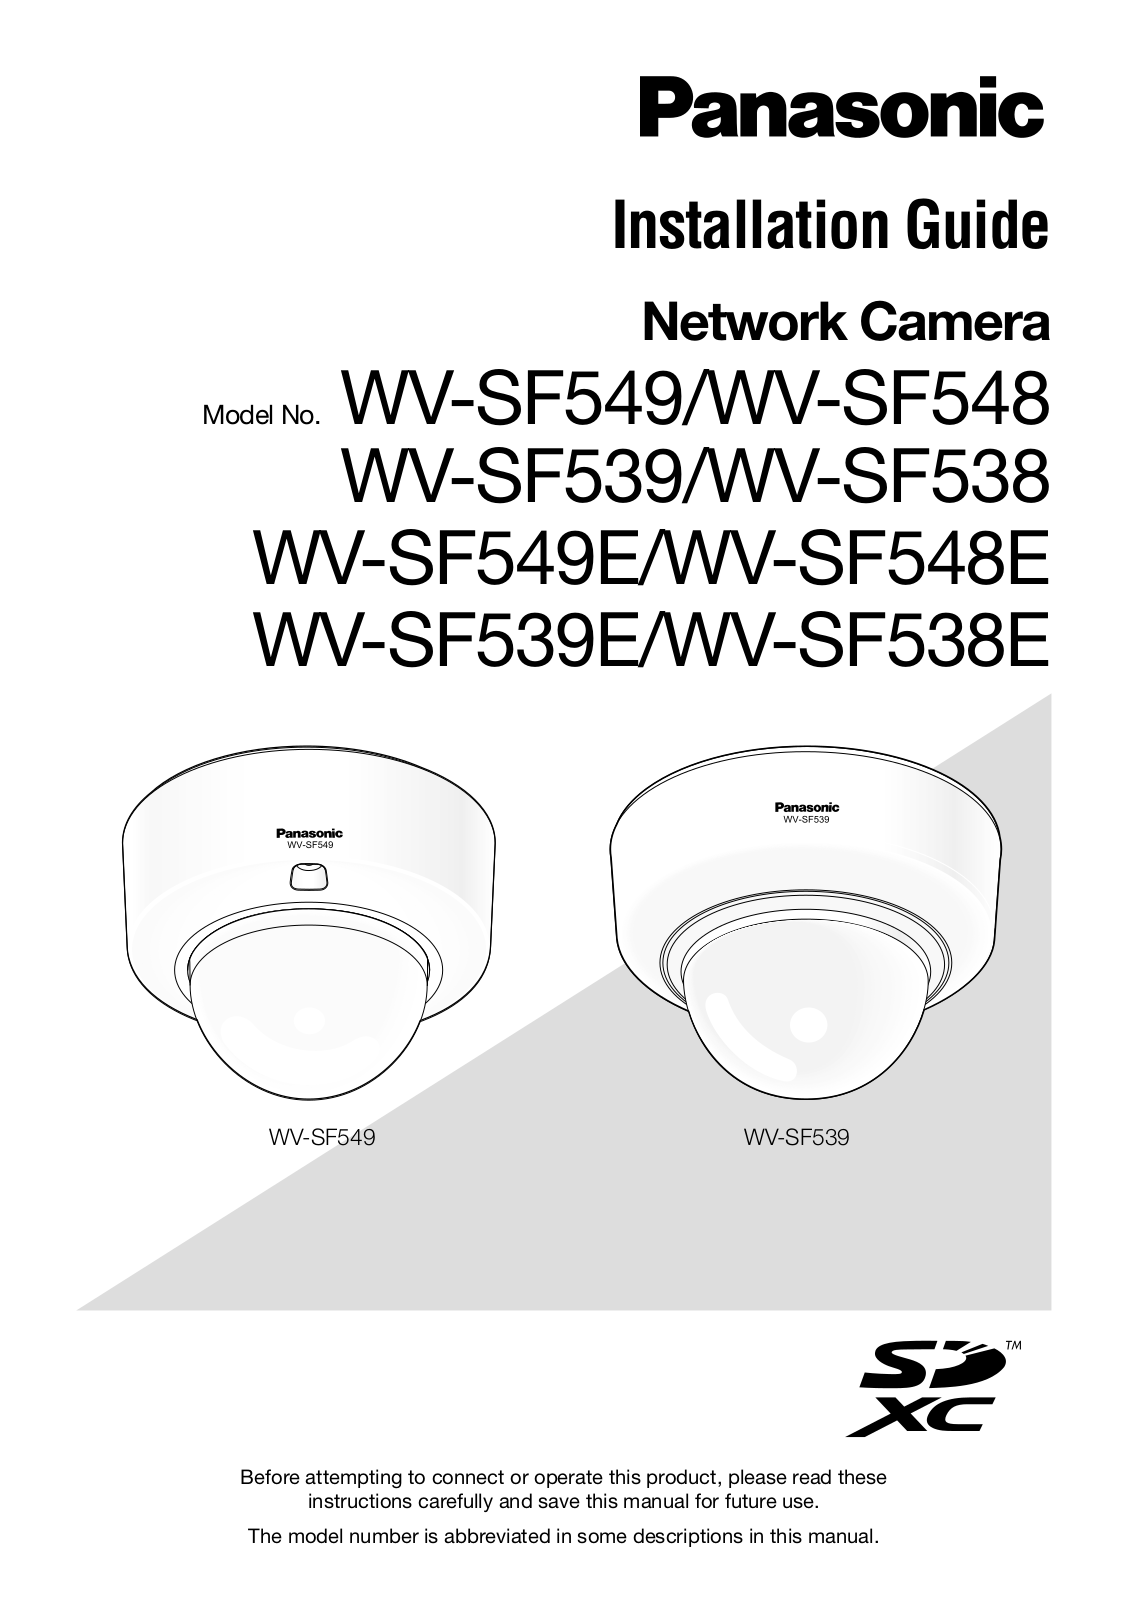 Panasonic WV-SV548, WV-SF548, WV-SF549 Installation Guide